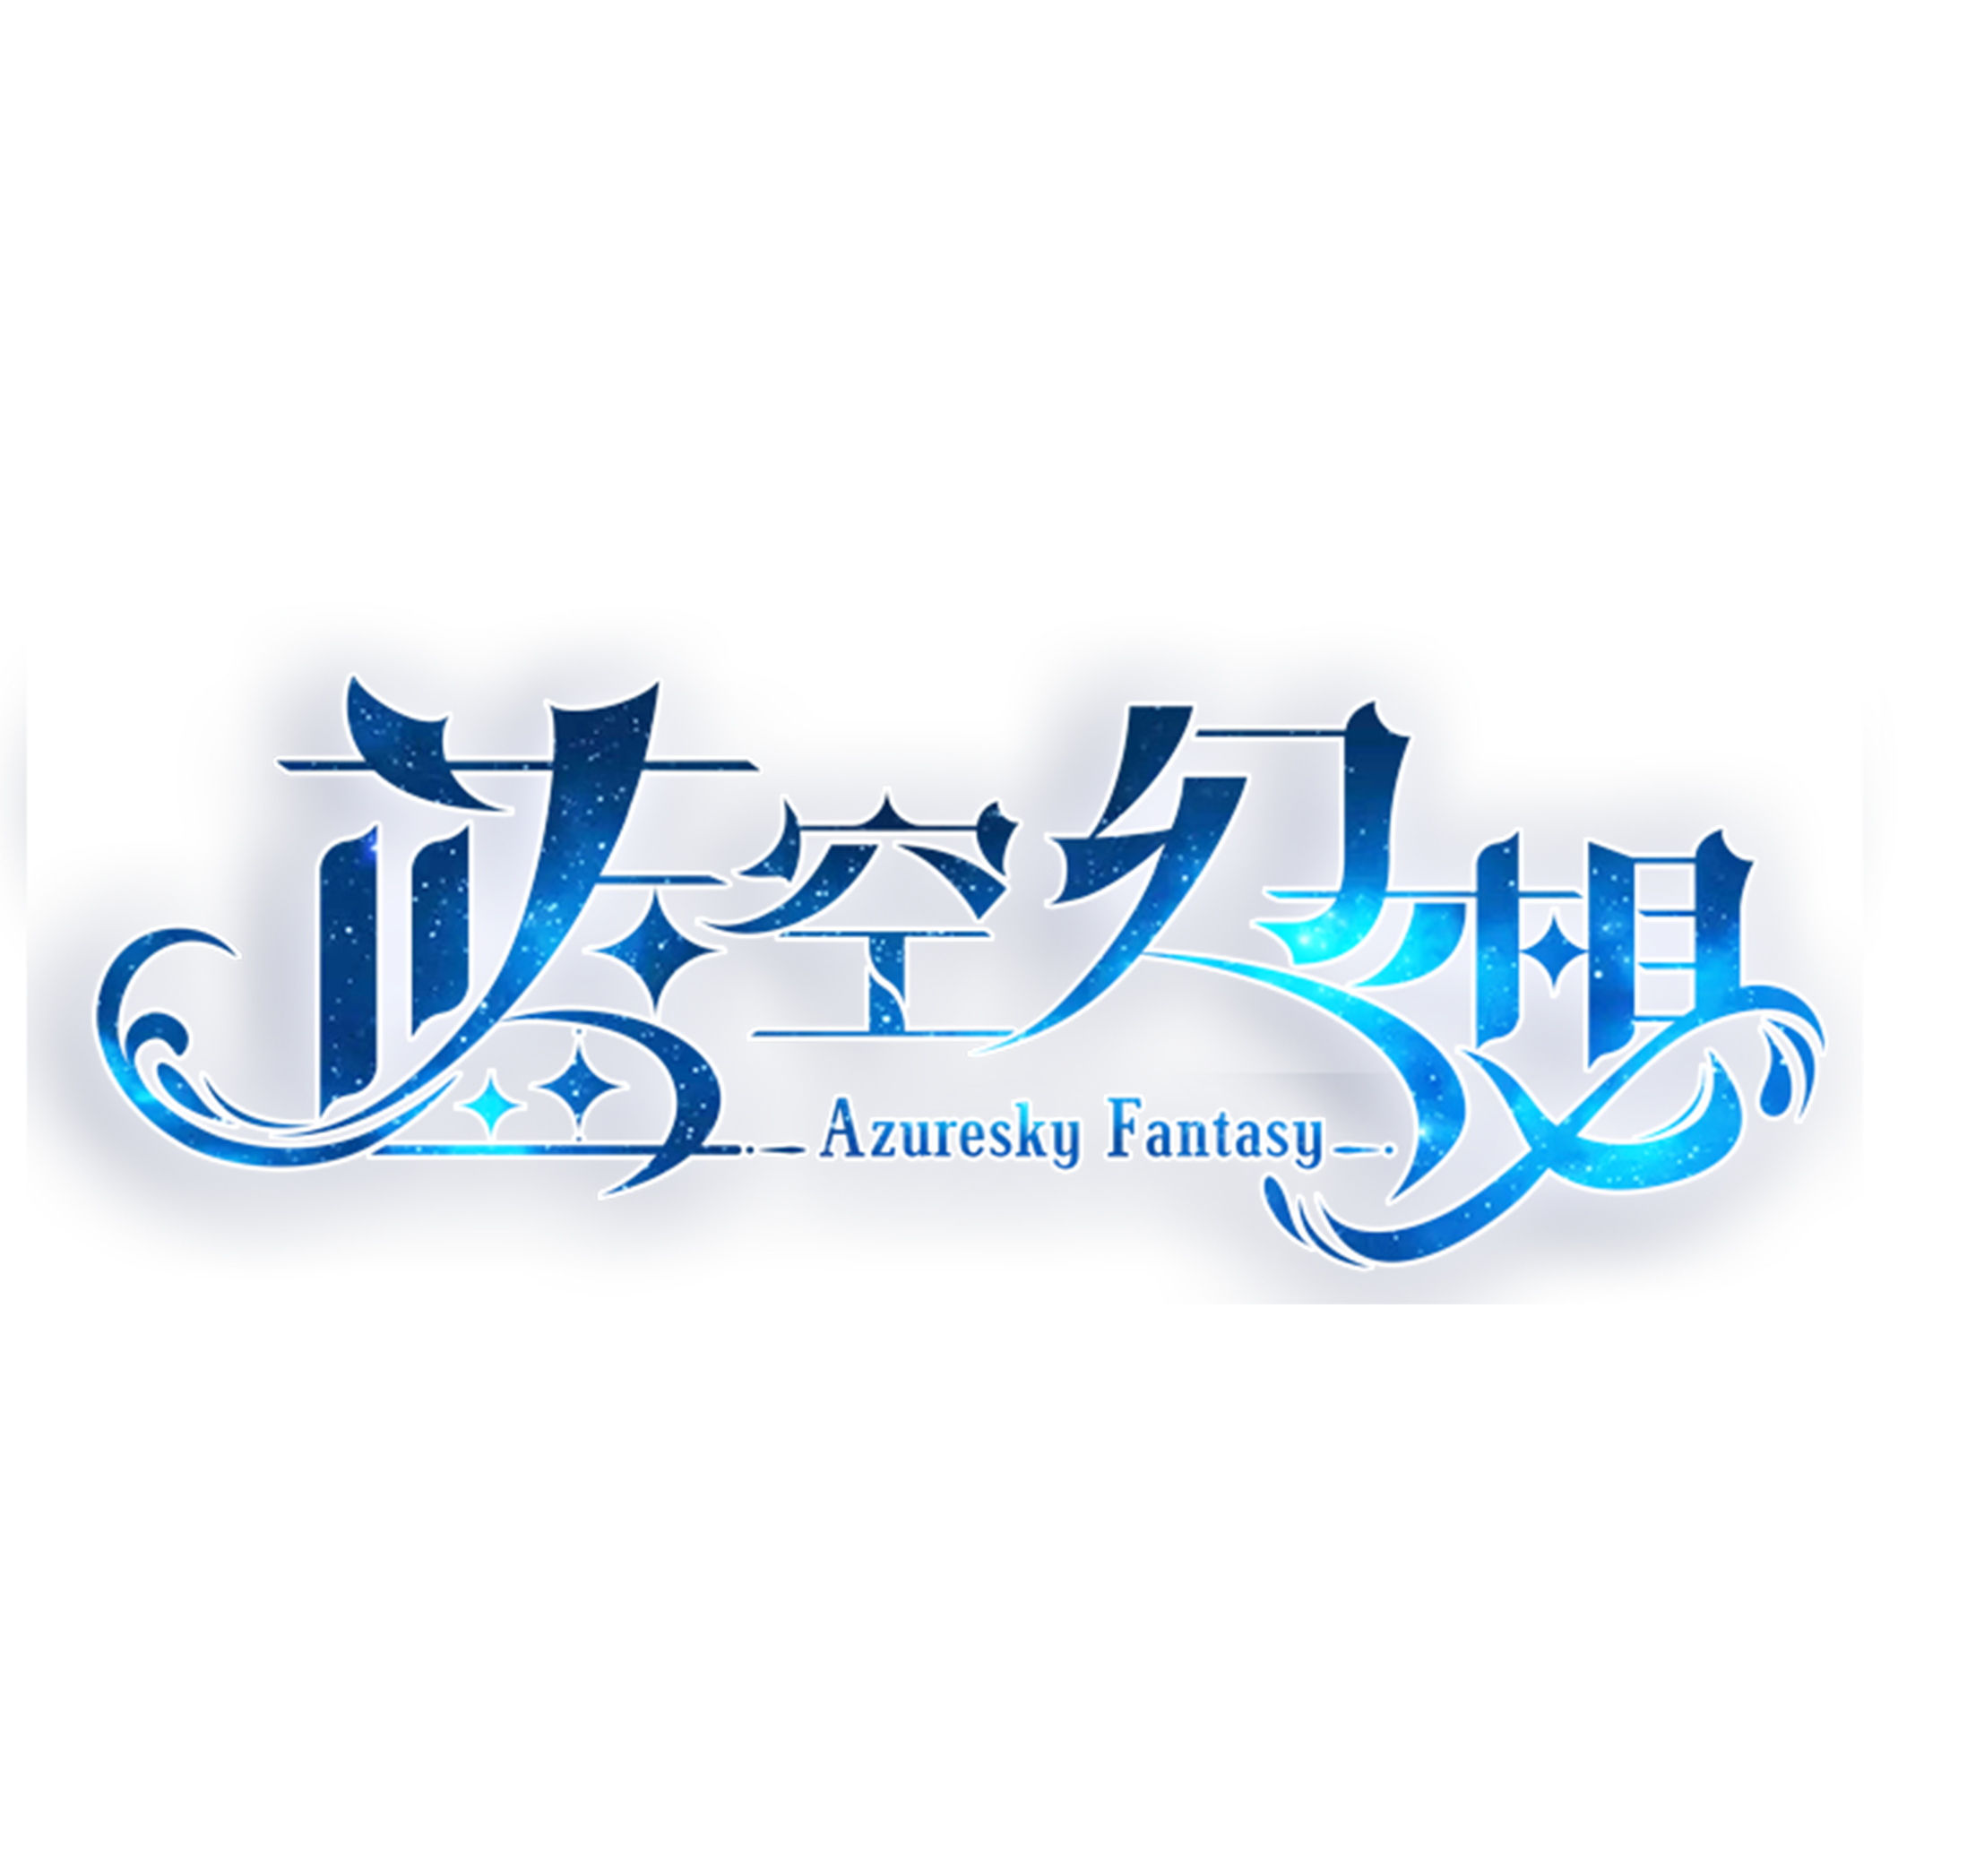 game_logo